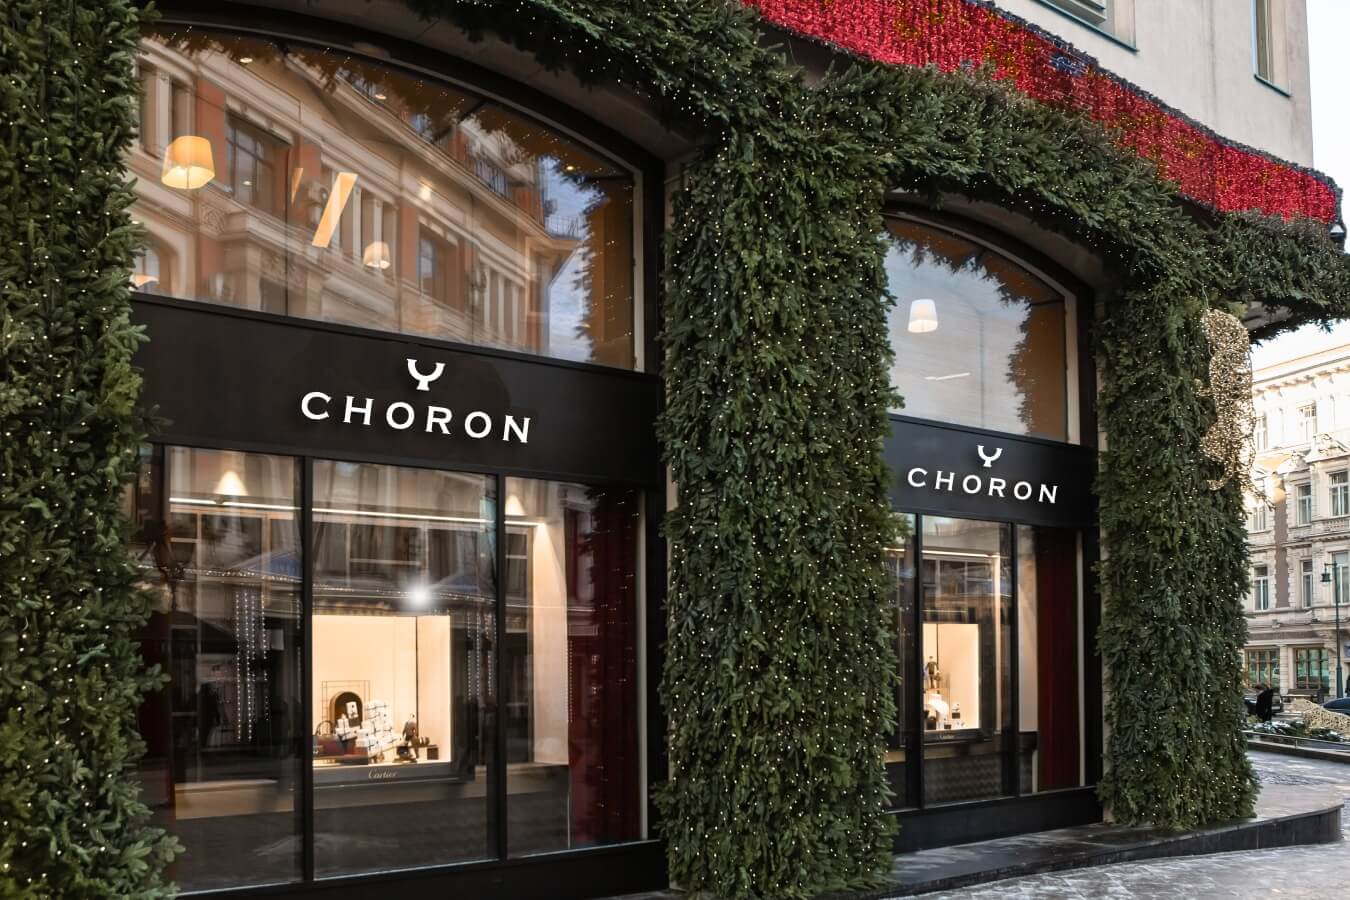 Façade of Choron Store